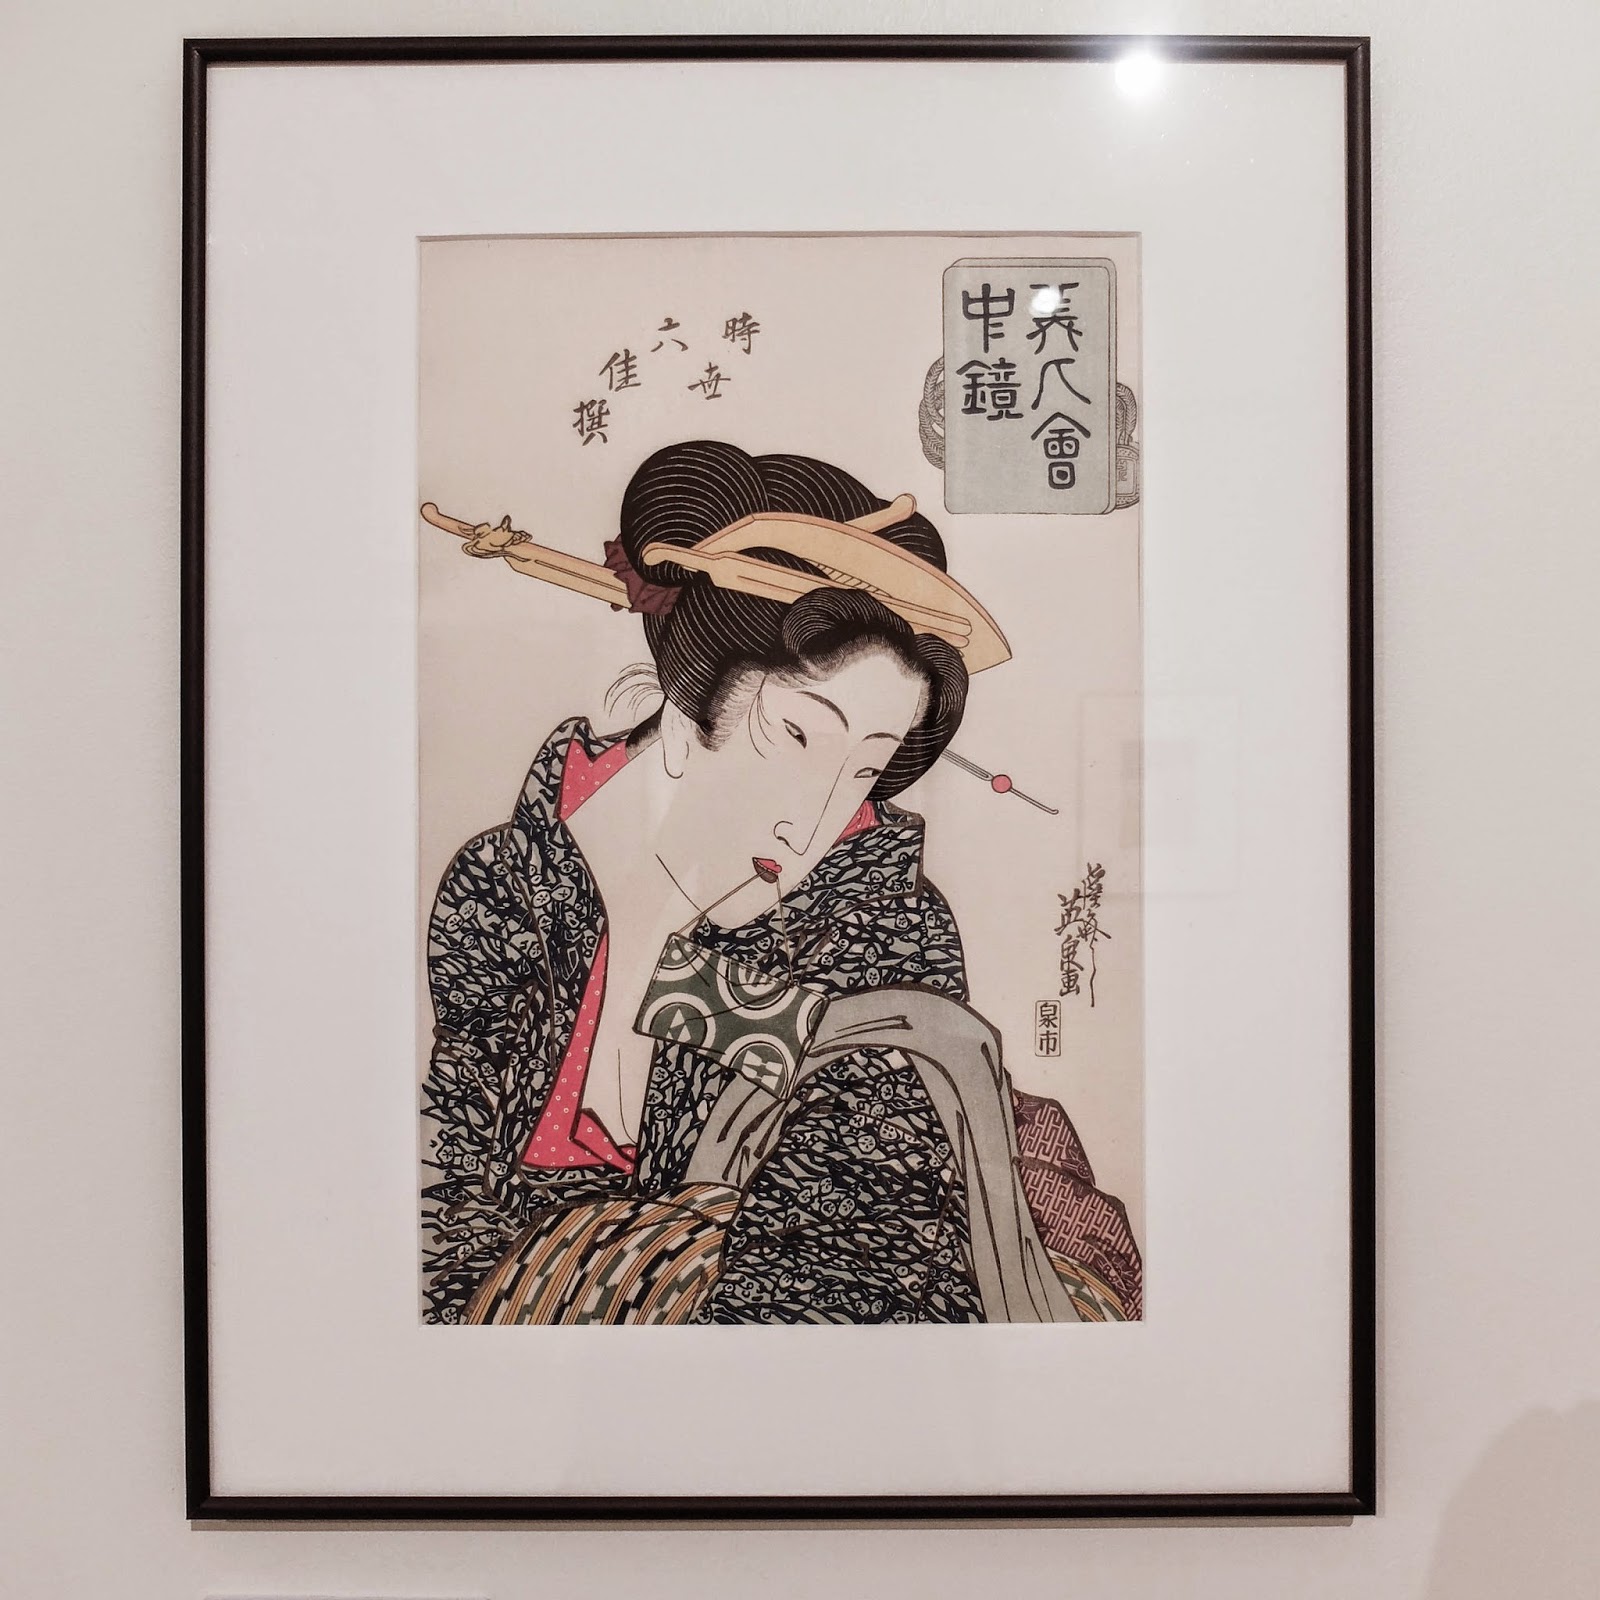 Ukiyoe Portraits exhibit - From the series "Bijin Kaichu Kagami" by Eisen Keisai